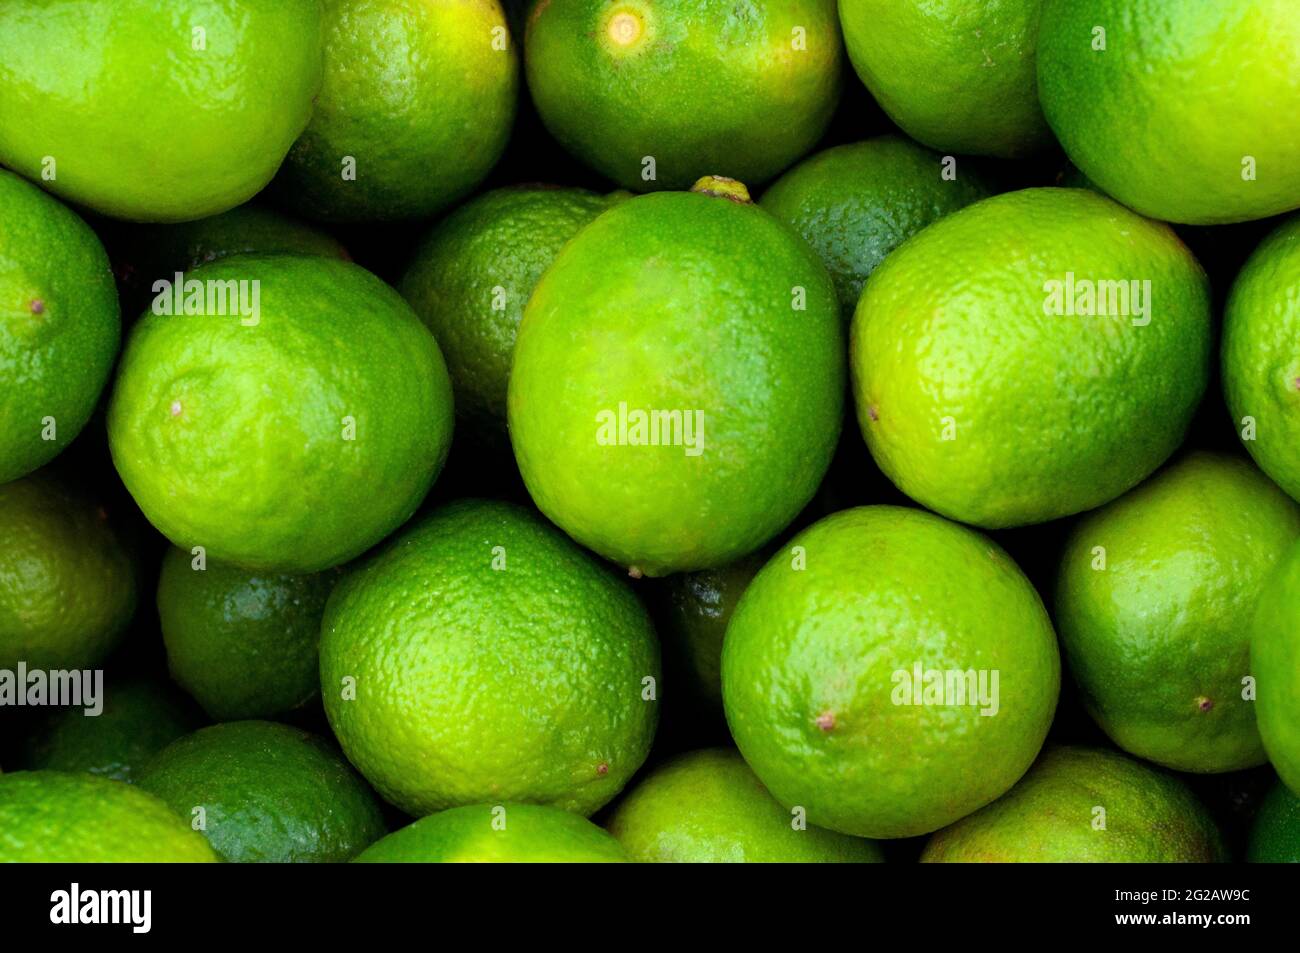 Zitrone Limette grüne Frucht. Nahaufnahme des Hintergrundbildes. Illustration für die Erntezeit, Landwirtschaft, verschiedene Obstsorten. Stockfoto